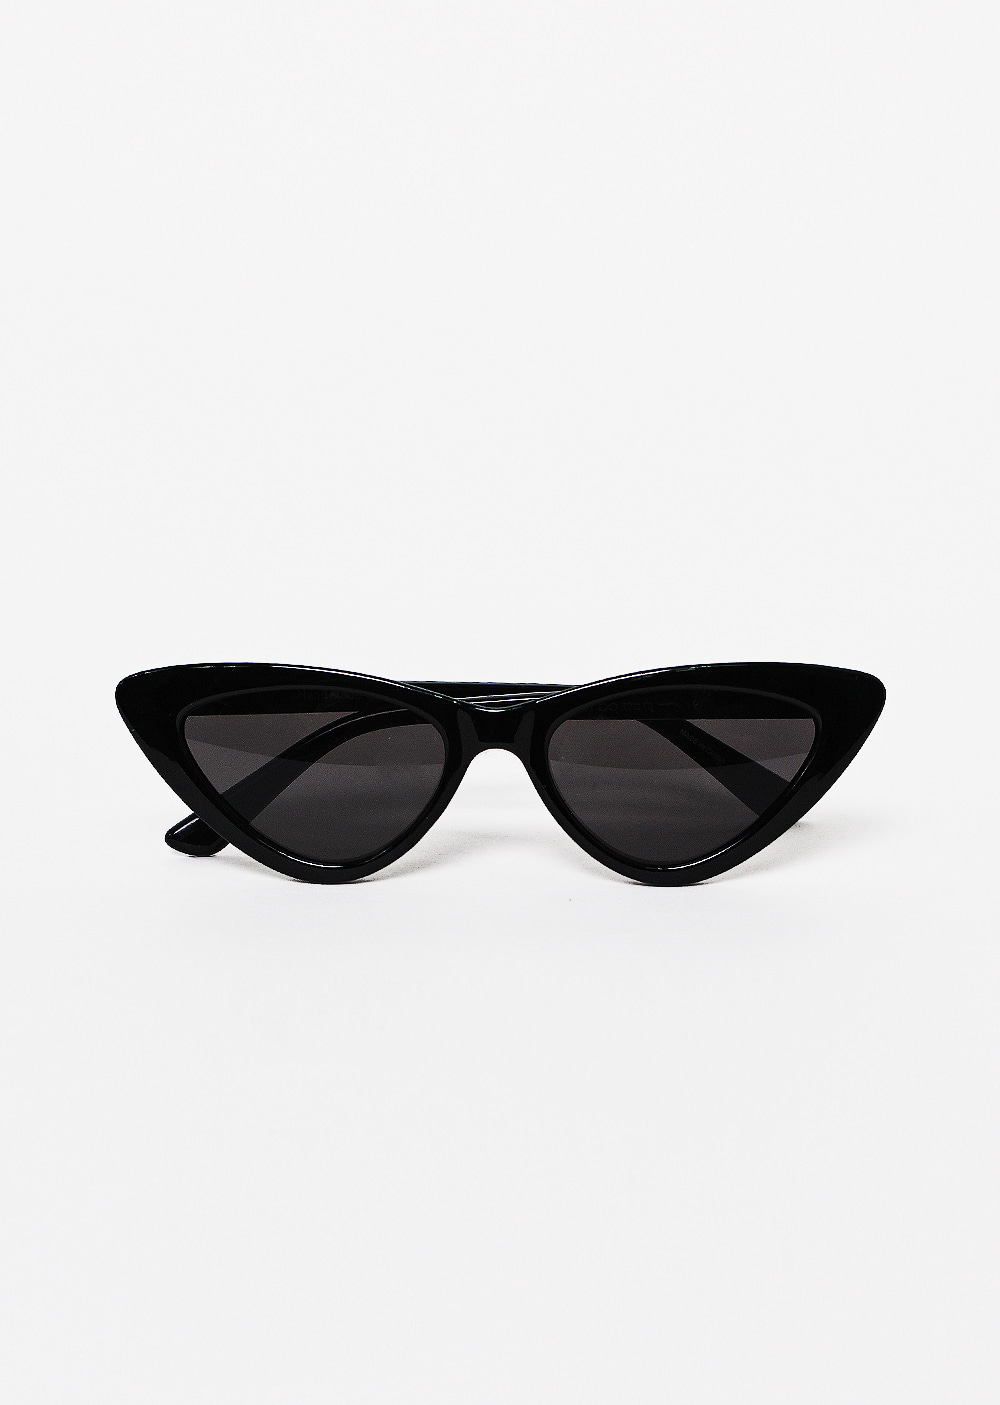 블랙 sunglasses